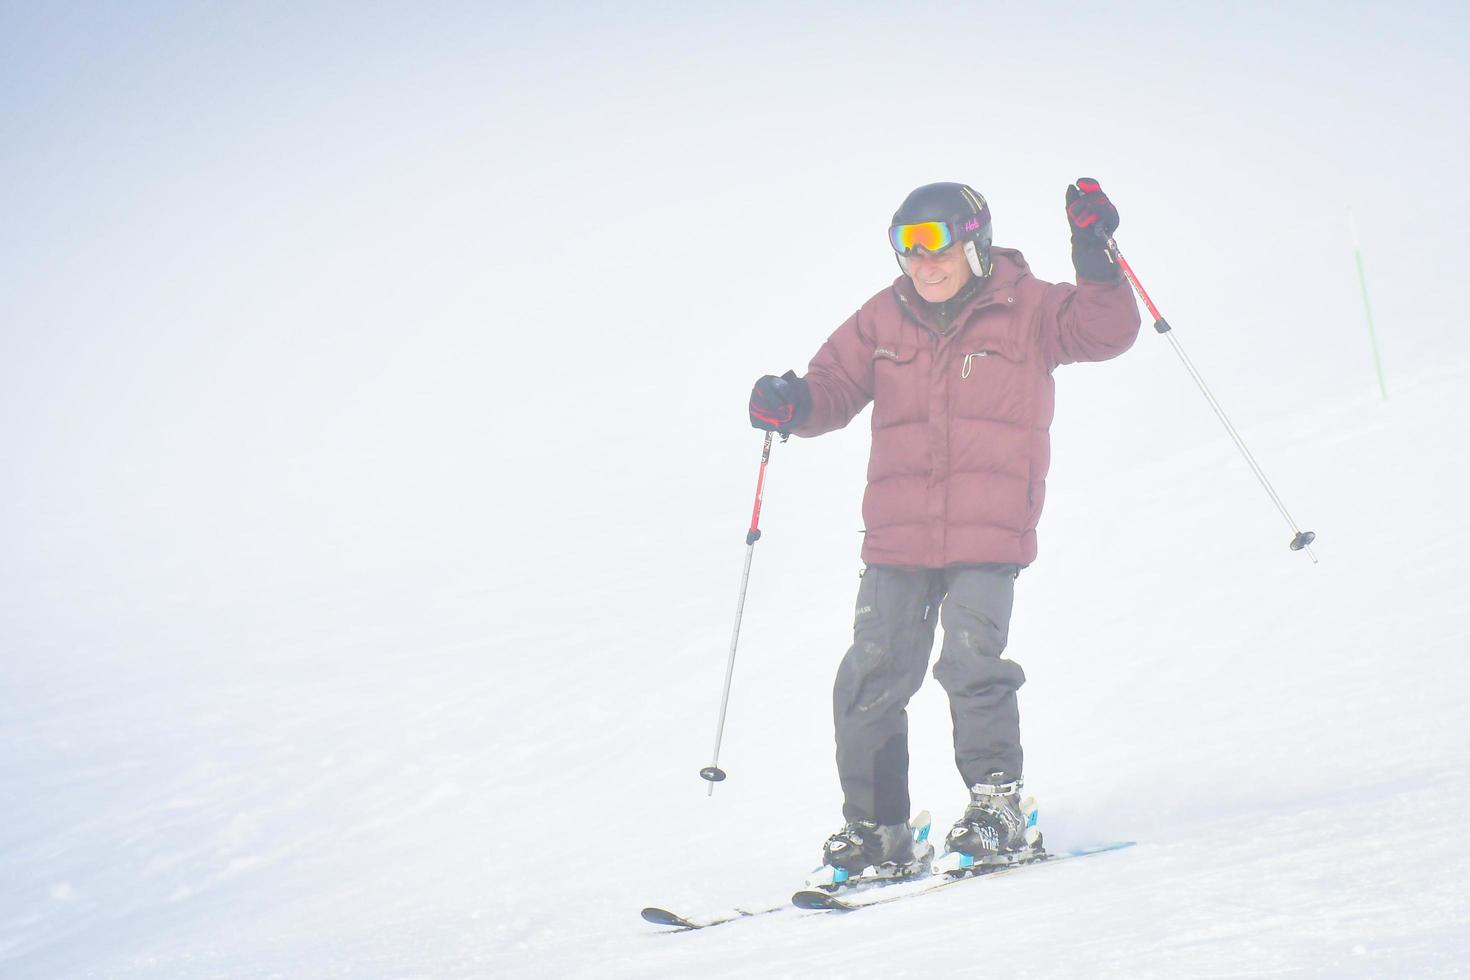 gudauri, géorgie, 2022 - homme caucasien aventureux âgé ski alpin excité par des conditions enneigées dans la station de ski d'hiver en vacances photo